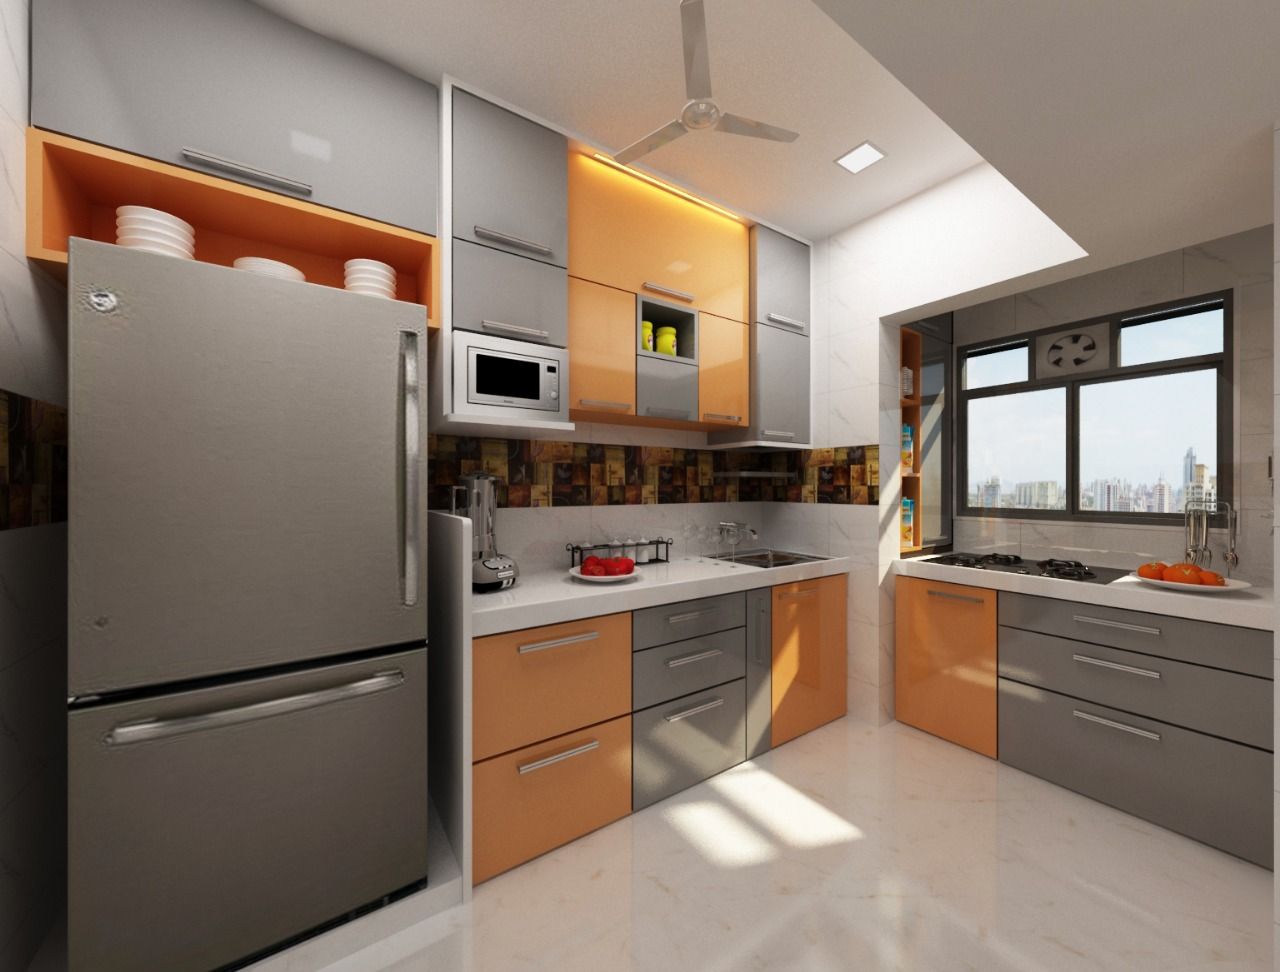 3BHK home design in Ghansoli, Mumbai , Square 4 Design & Build Square 4 Design & Build Moderne keukens